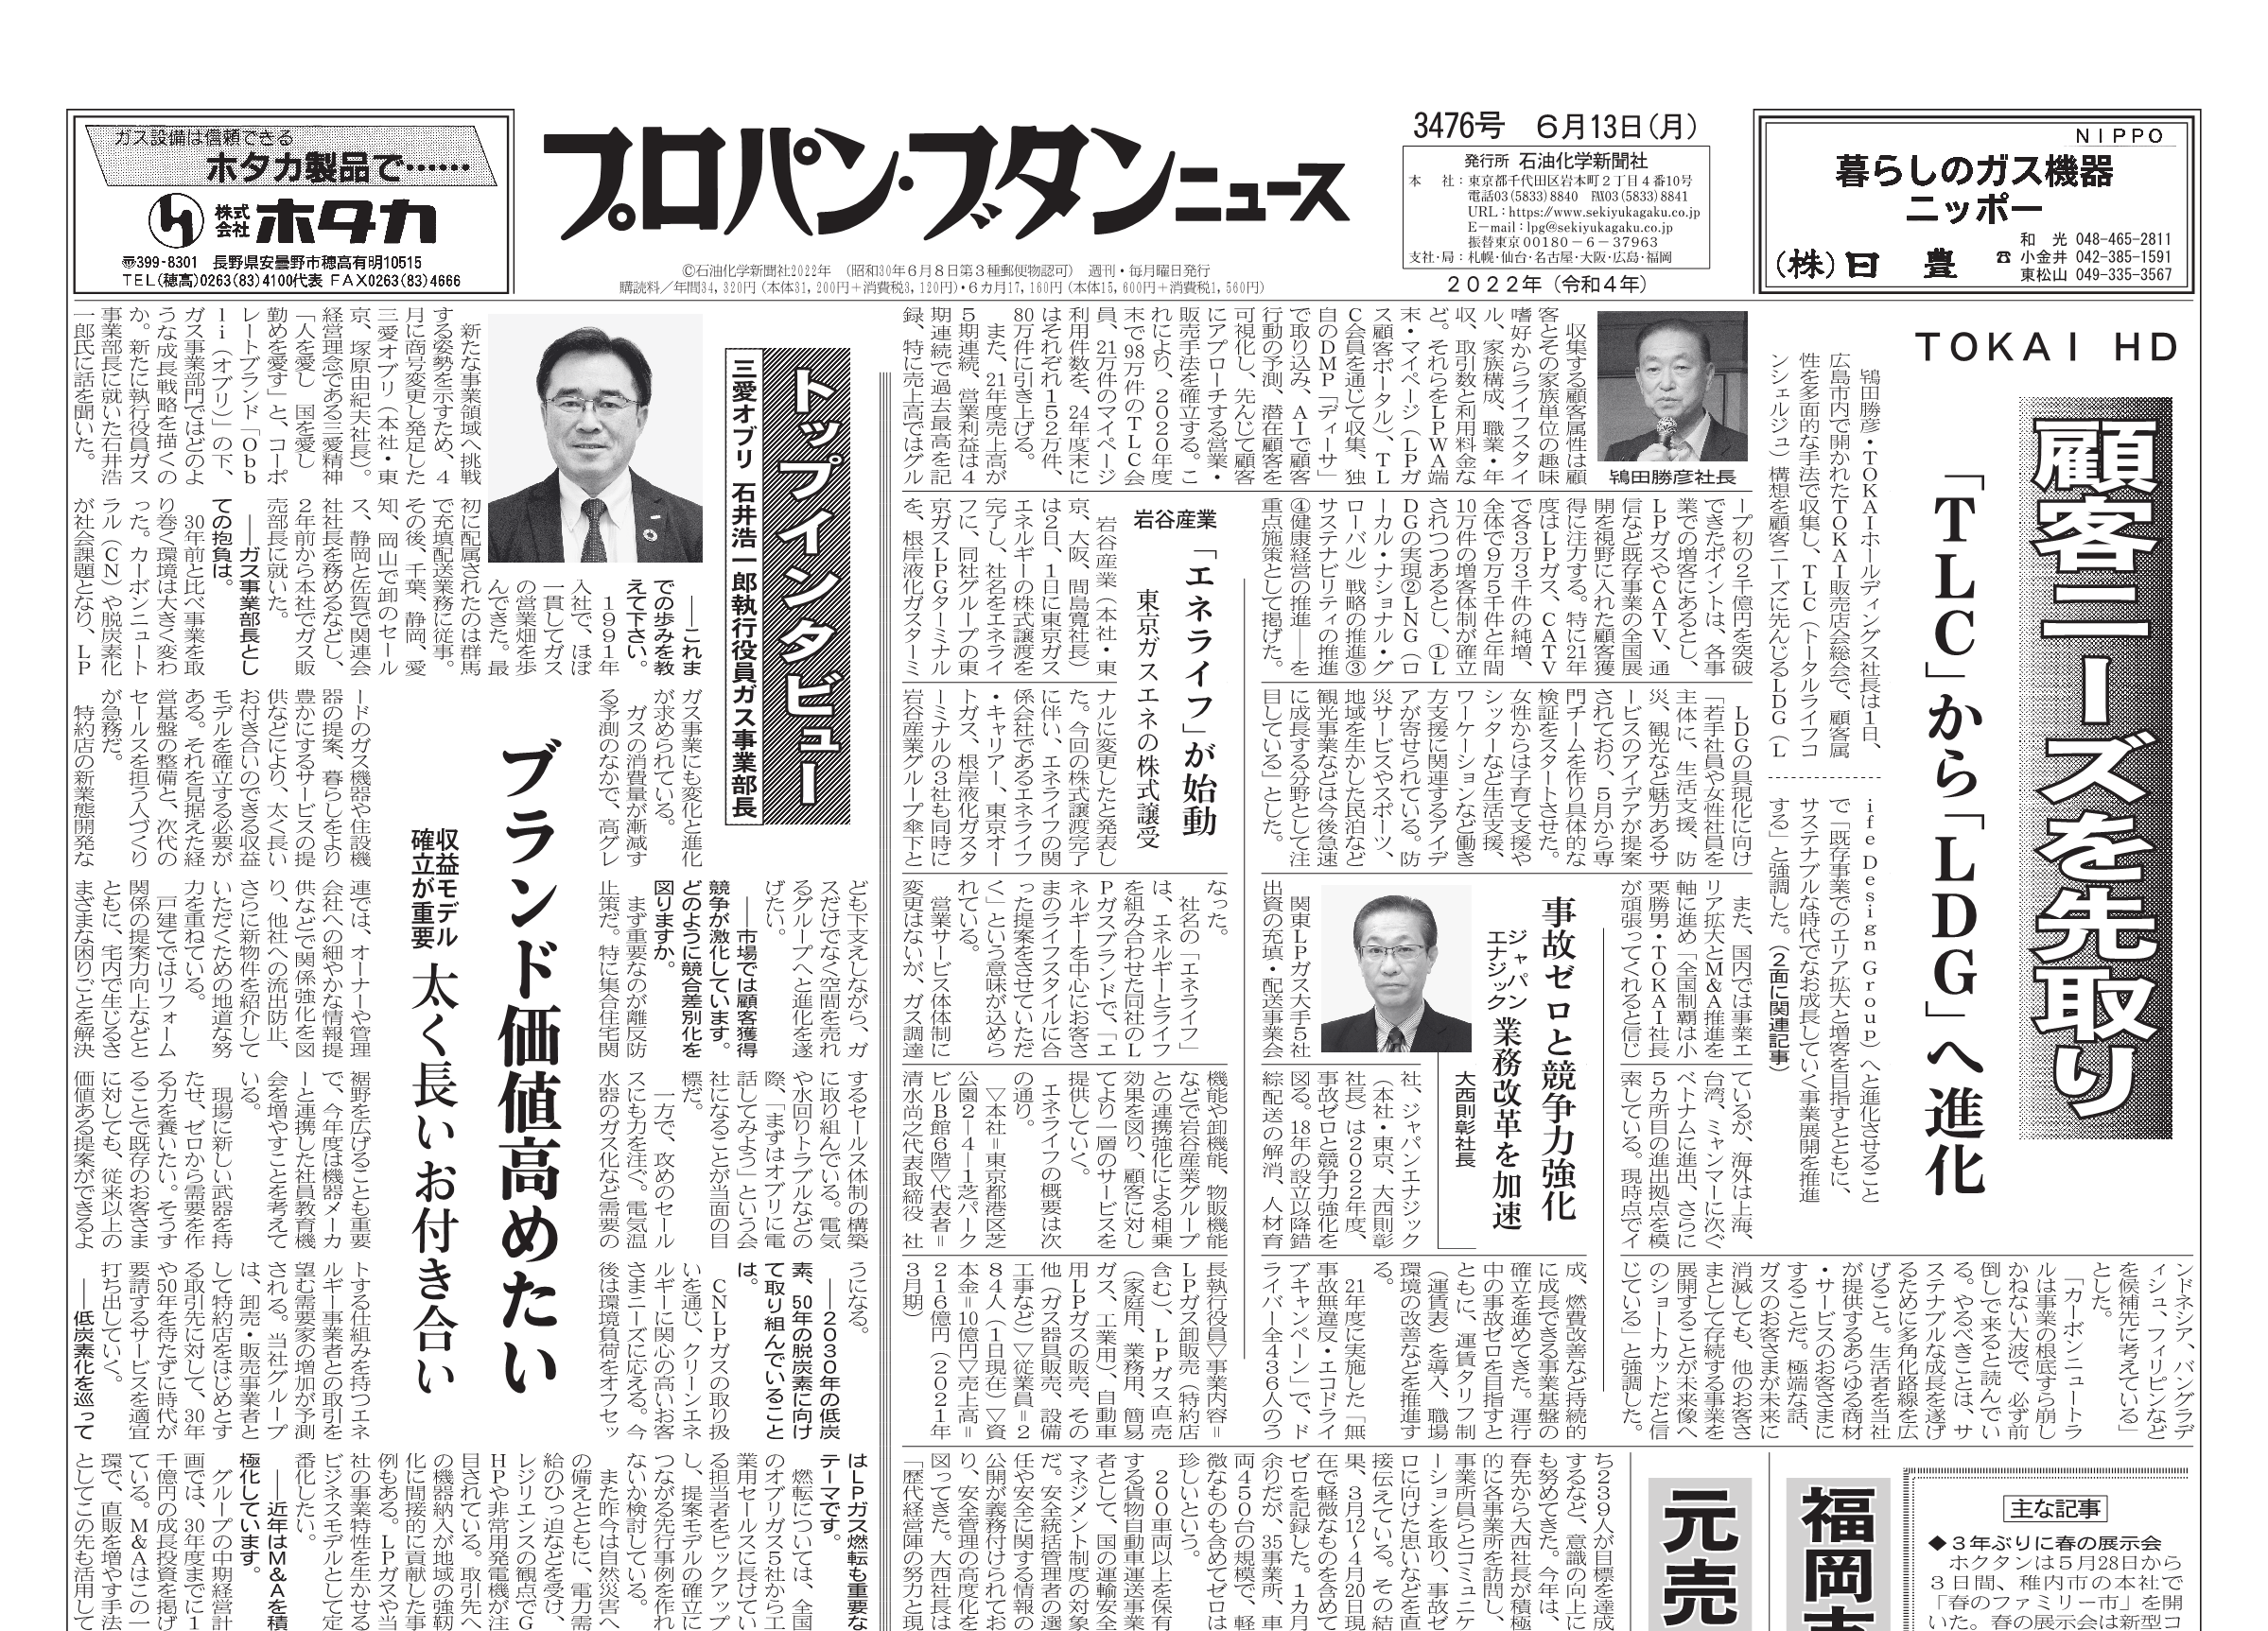 人気商品の 偏向の沖縄で 第三の新聞 を発行する sdspanama.com